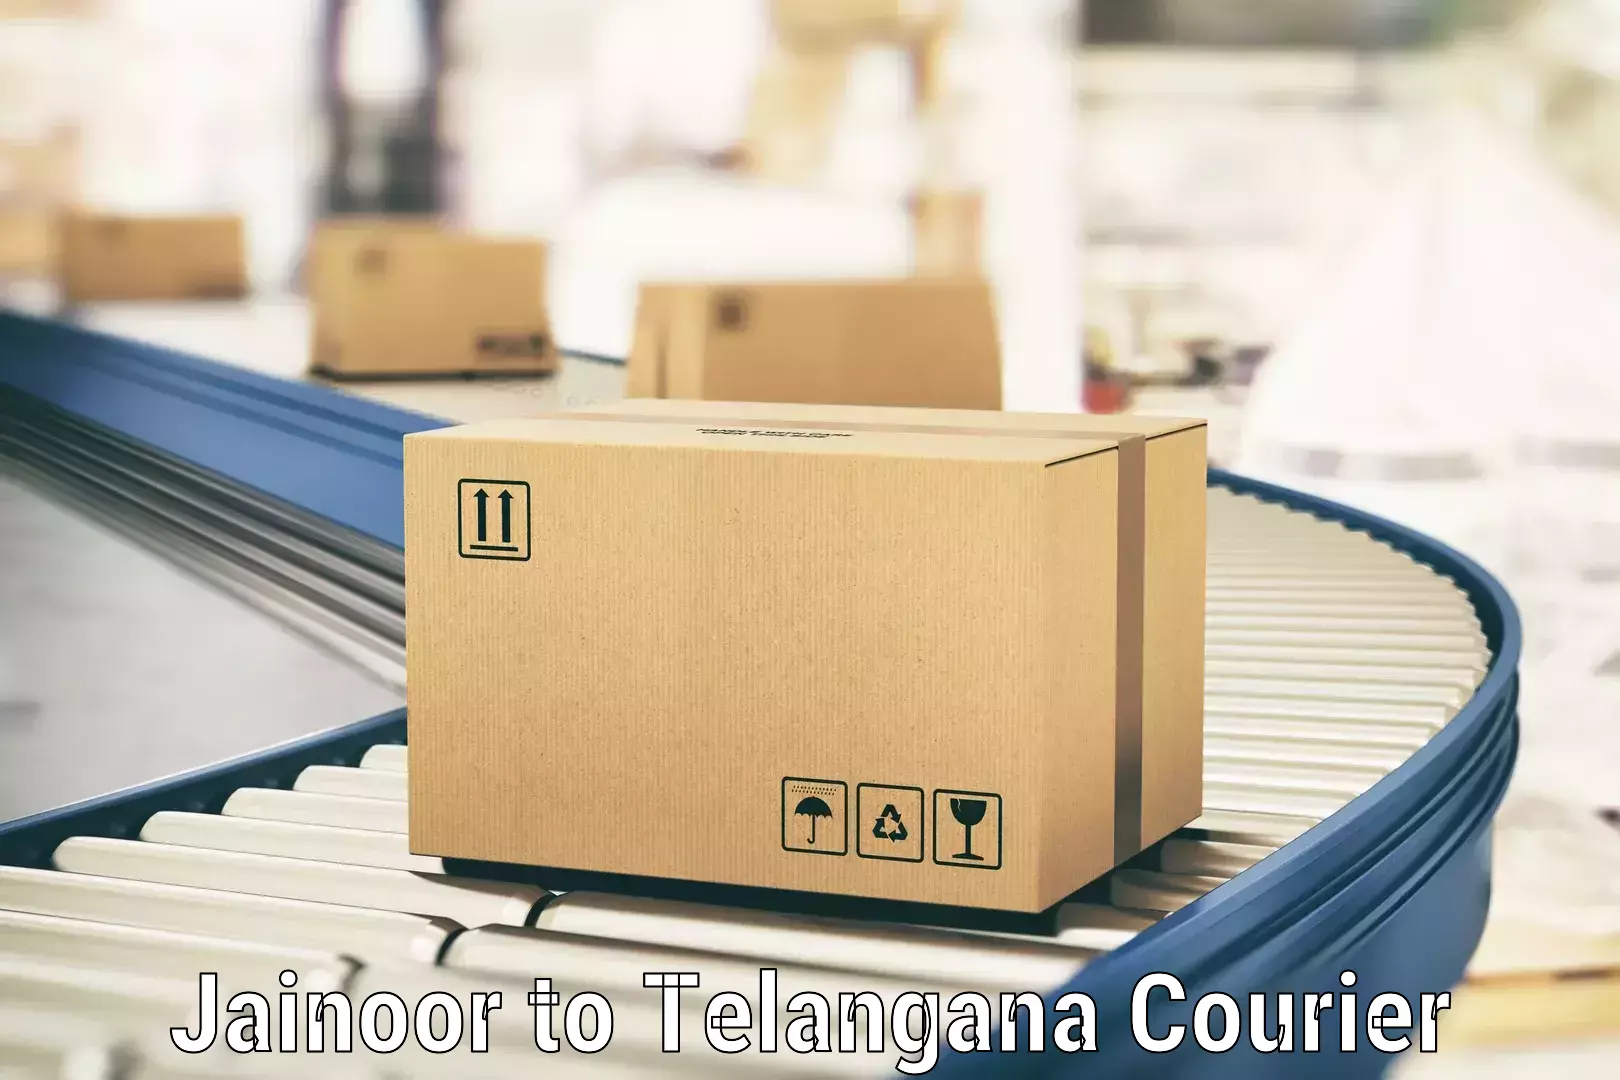 Premium courier solutions Jainoor to Tallada